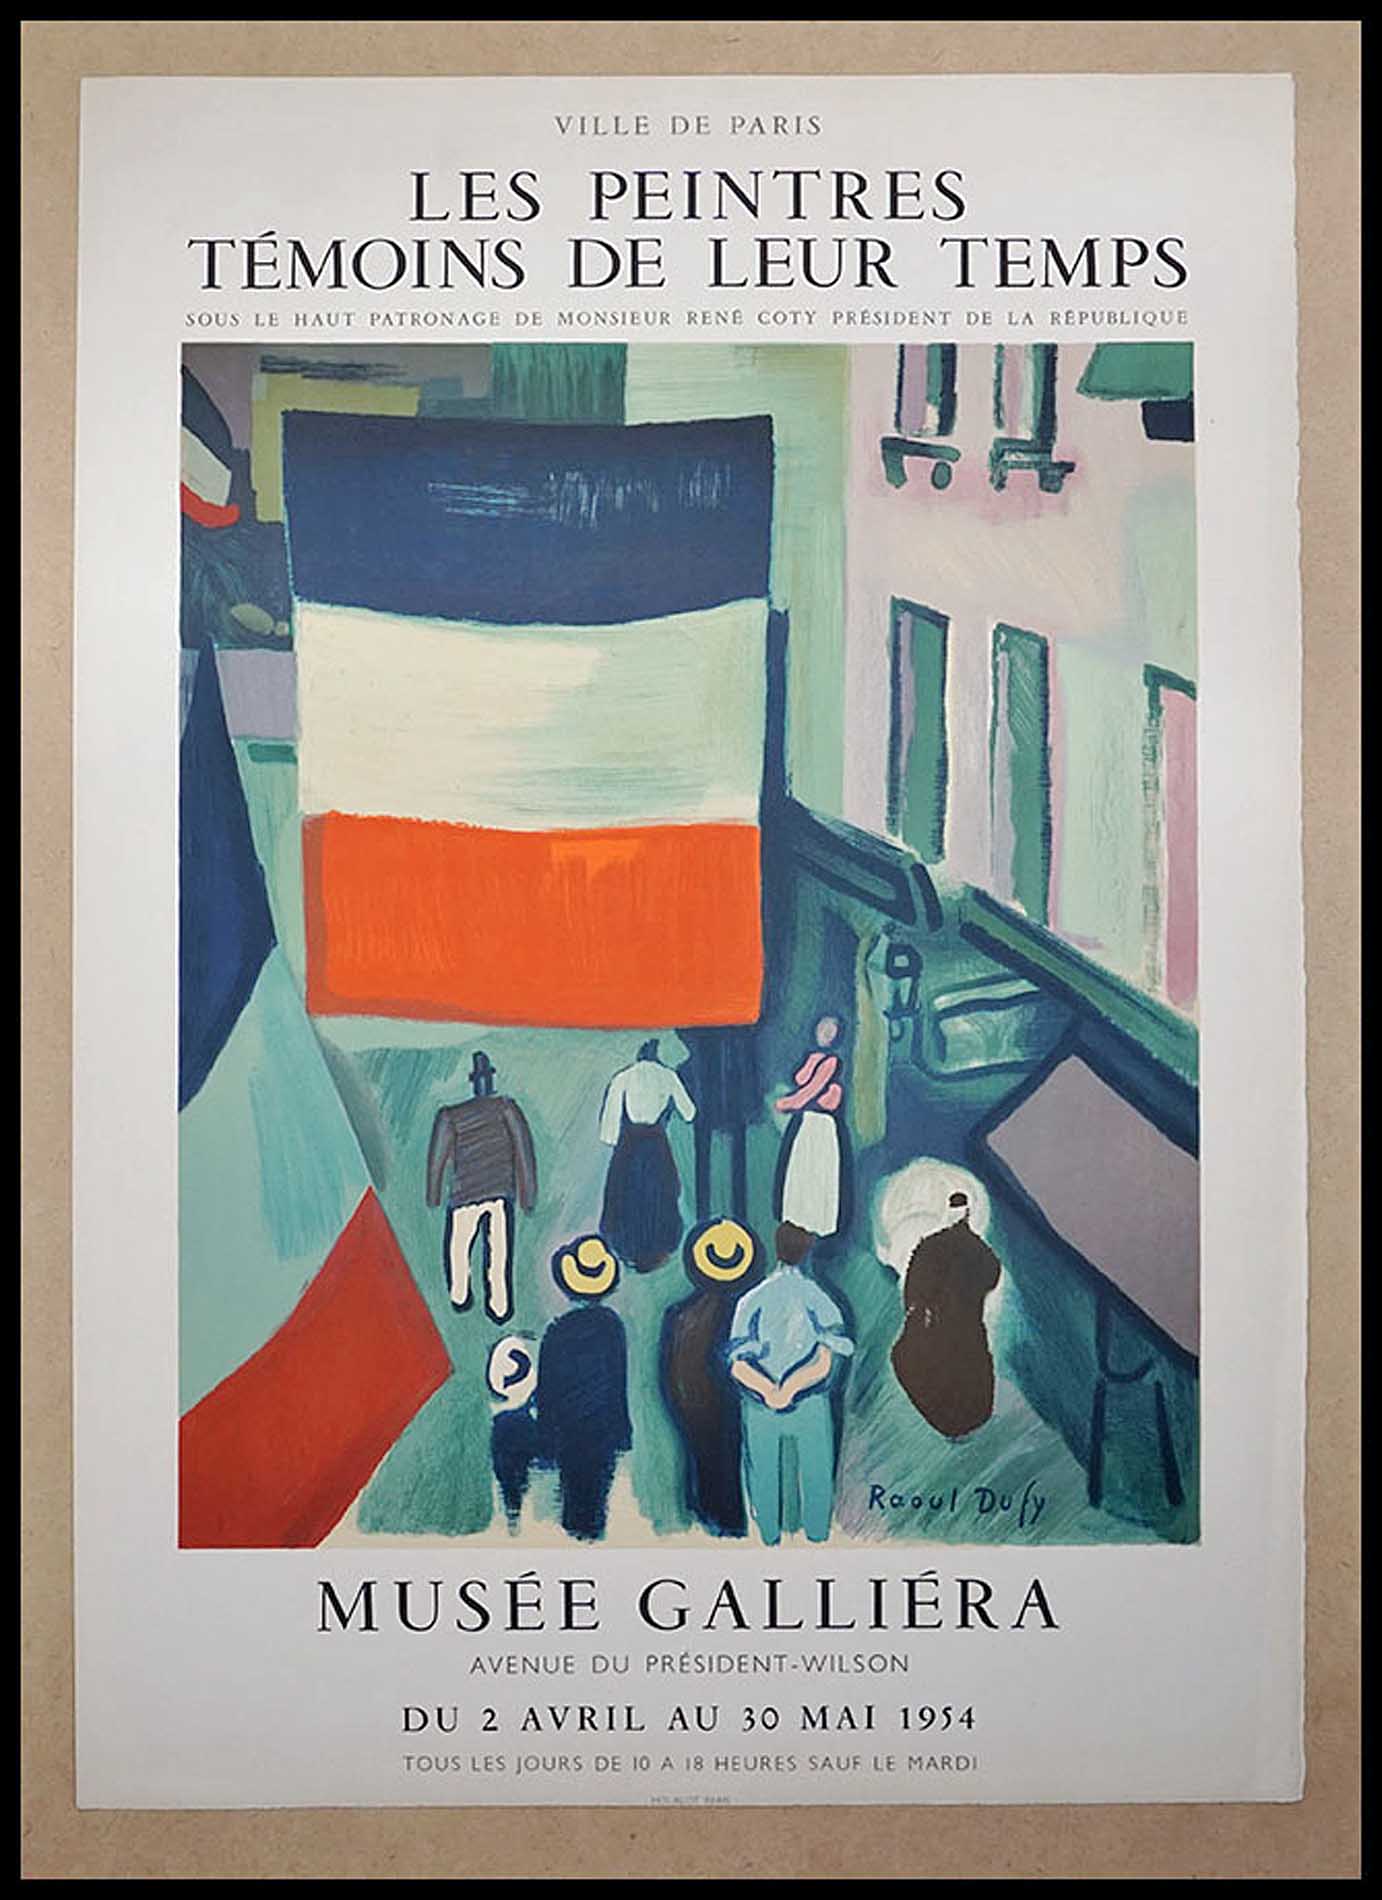 Raoul Dufy, Musee Galliera, les peintres temoins de leur temps